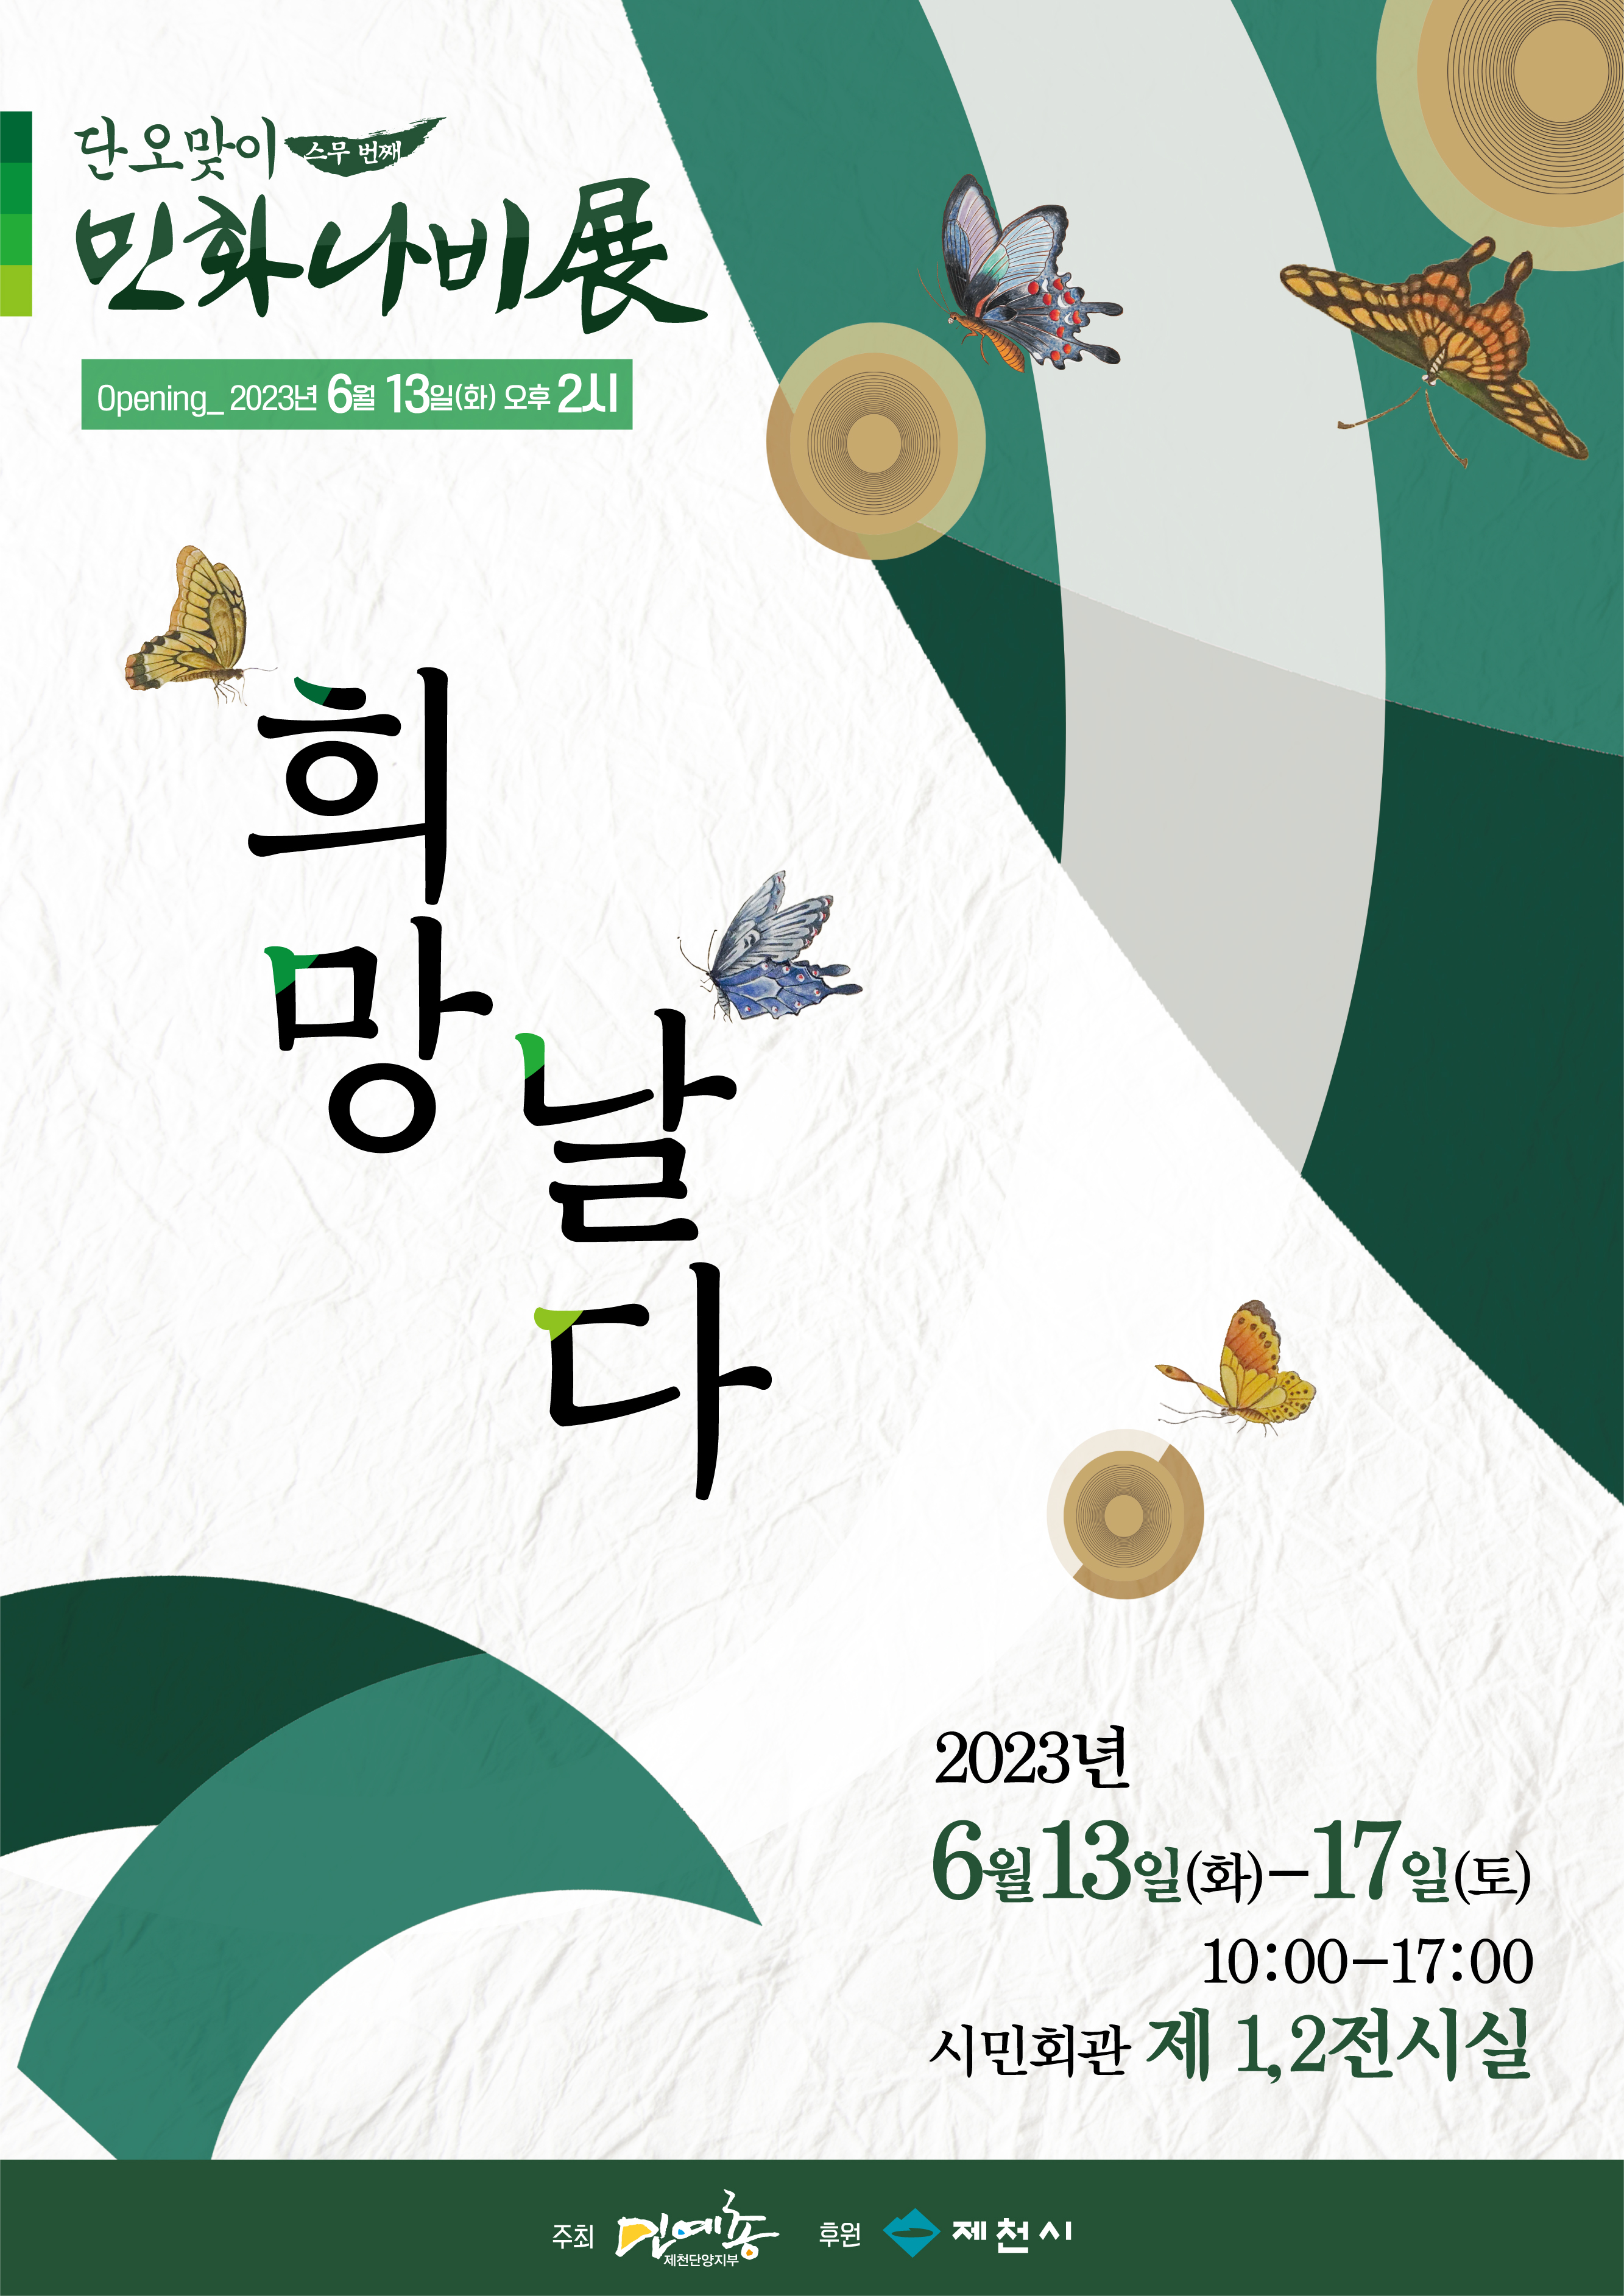 단오맞이 정기전 "희망, 날다" 전시 개최 홍보 이미지 1